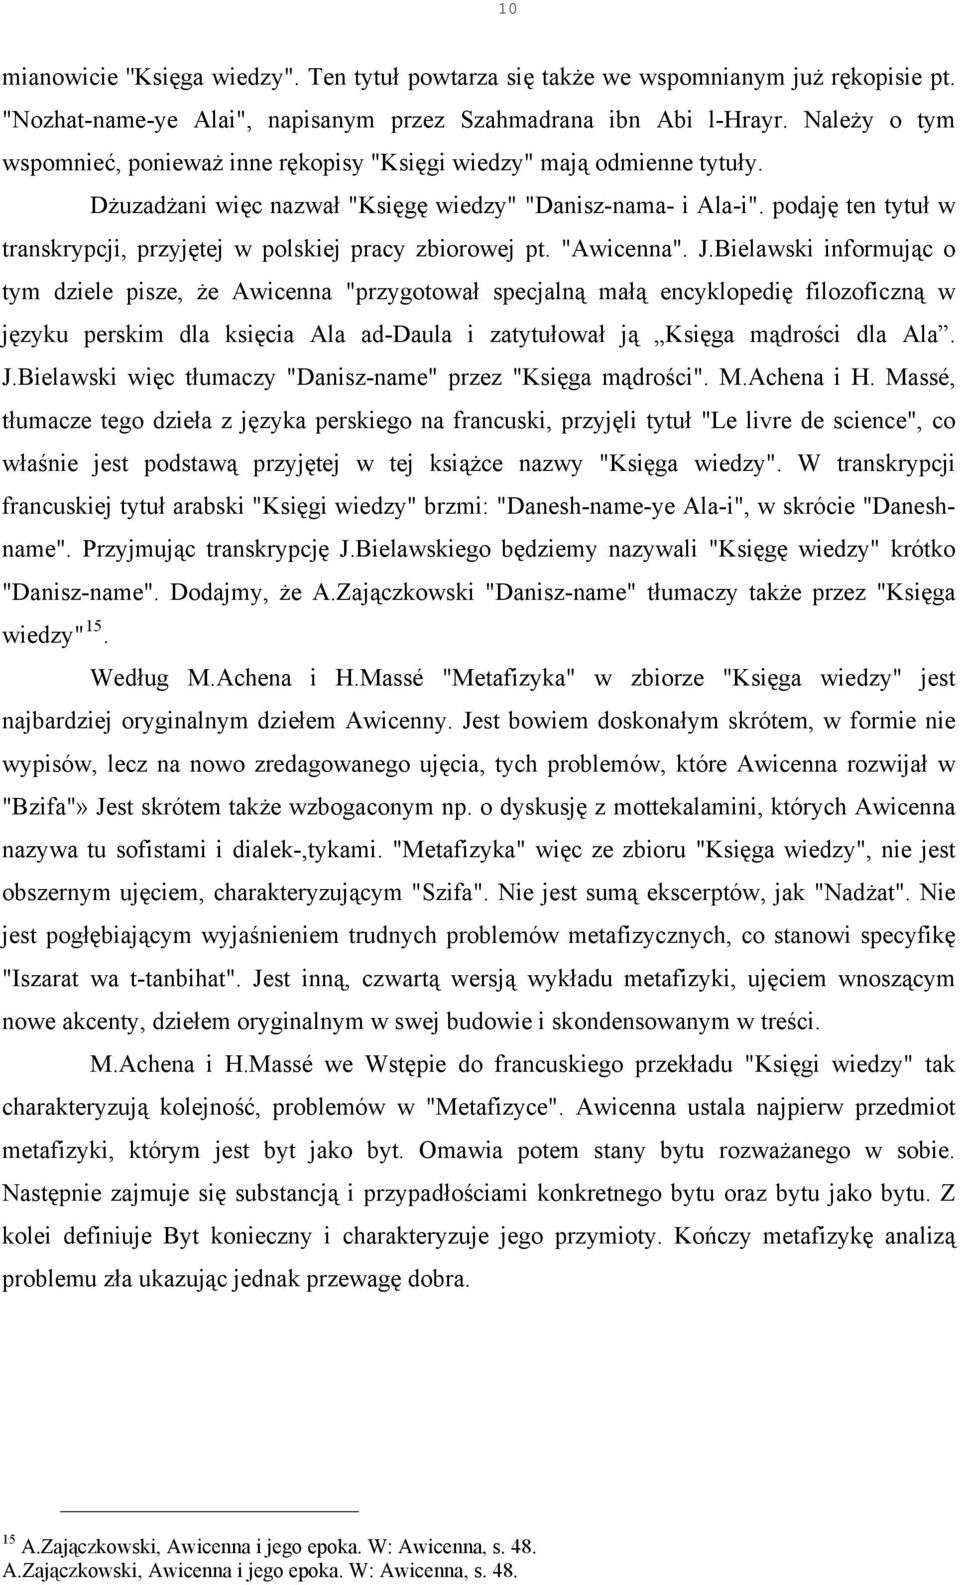 podaję ten tytuł w transkrypcji, przyjętej w polskiej pracy zbiorowej pt. "Awicenna". J.